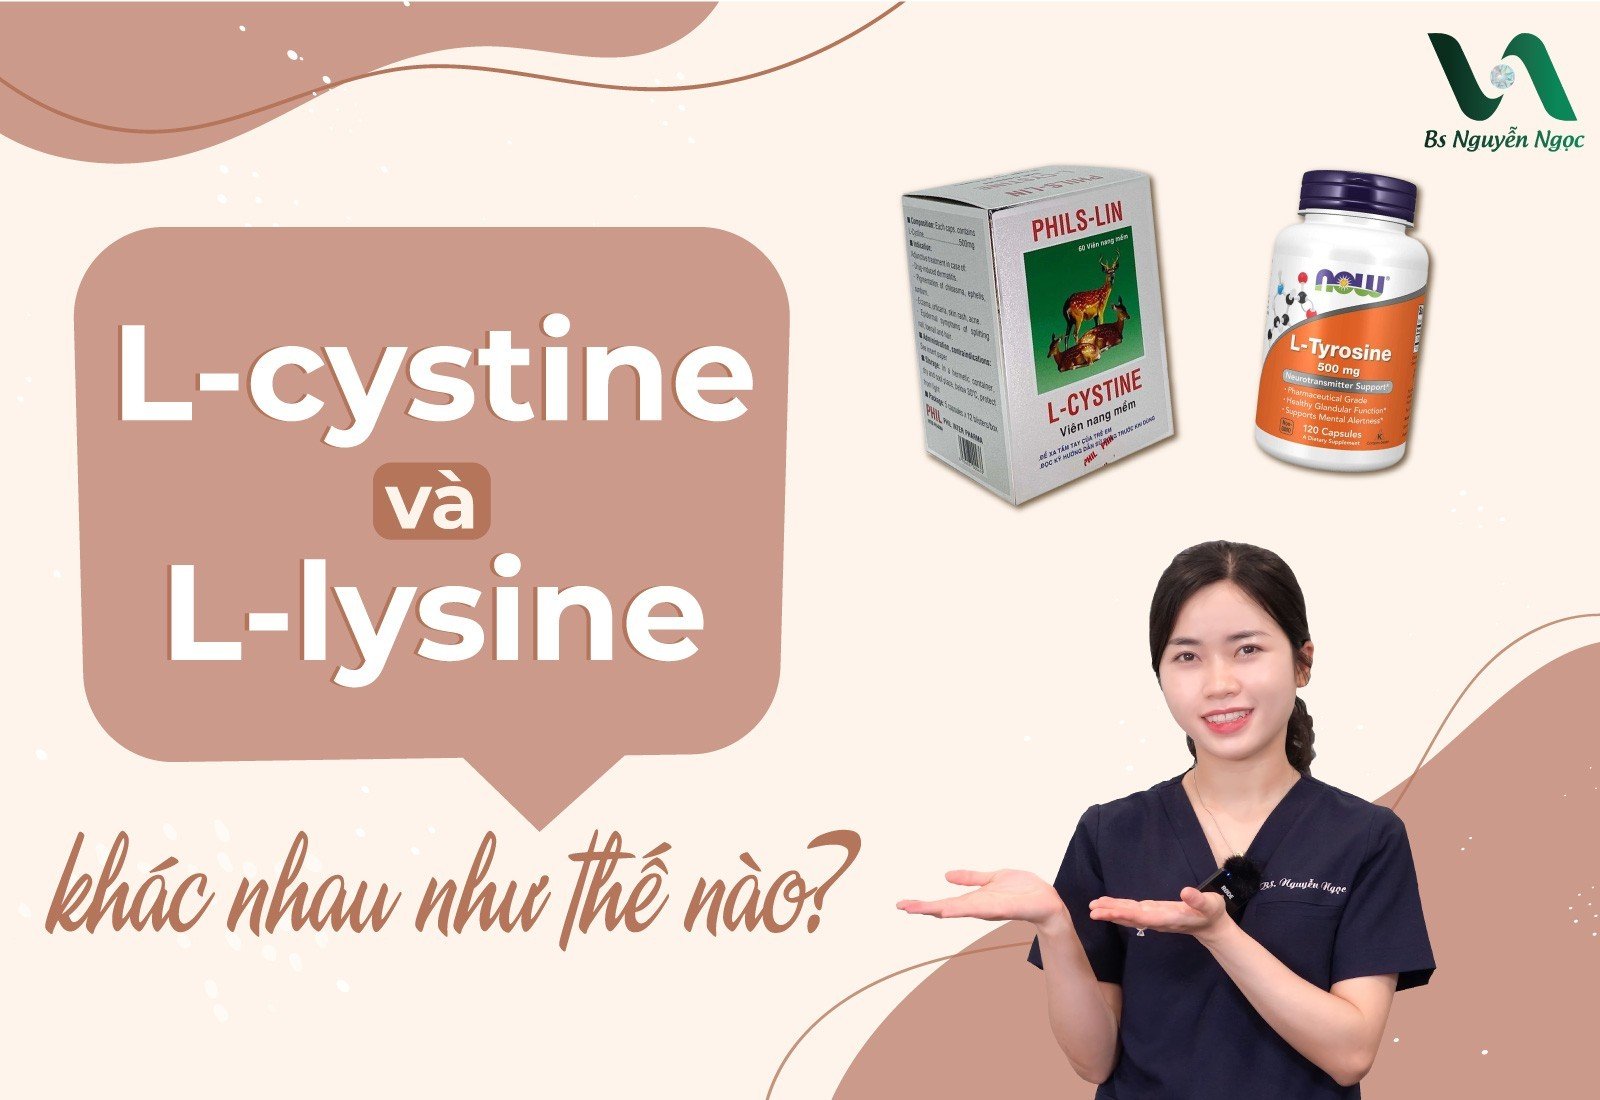 L-lysine và L-cystine là gì?
